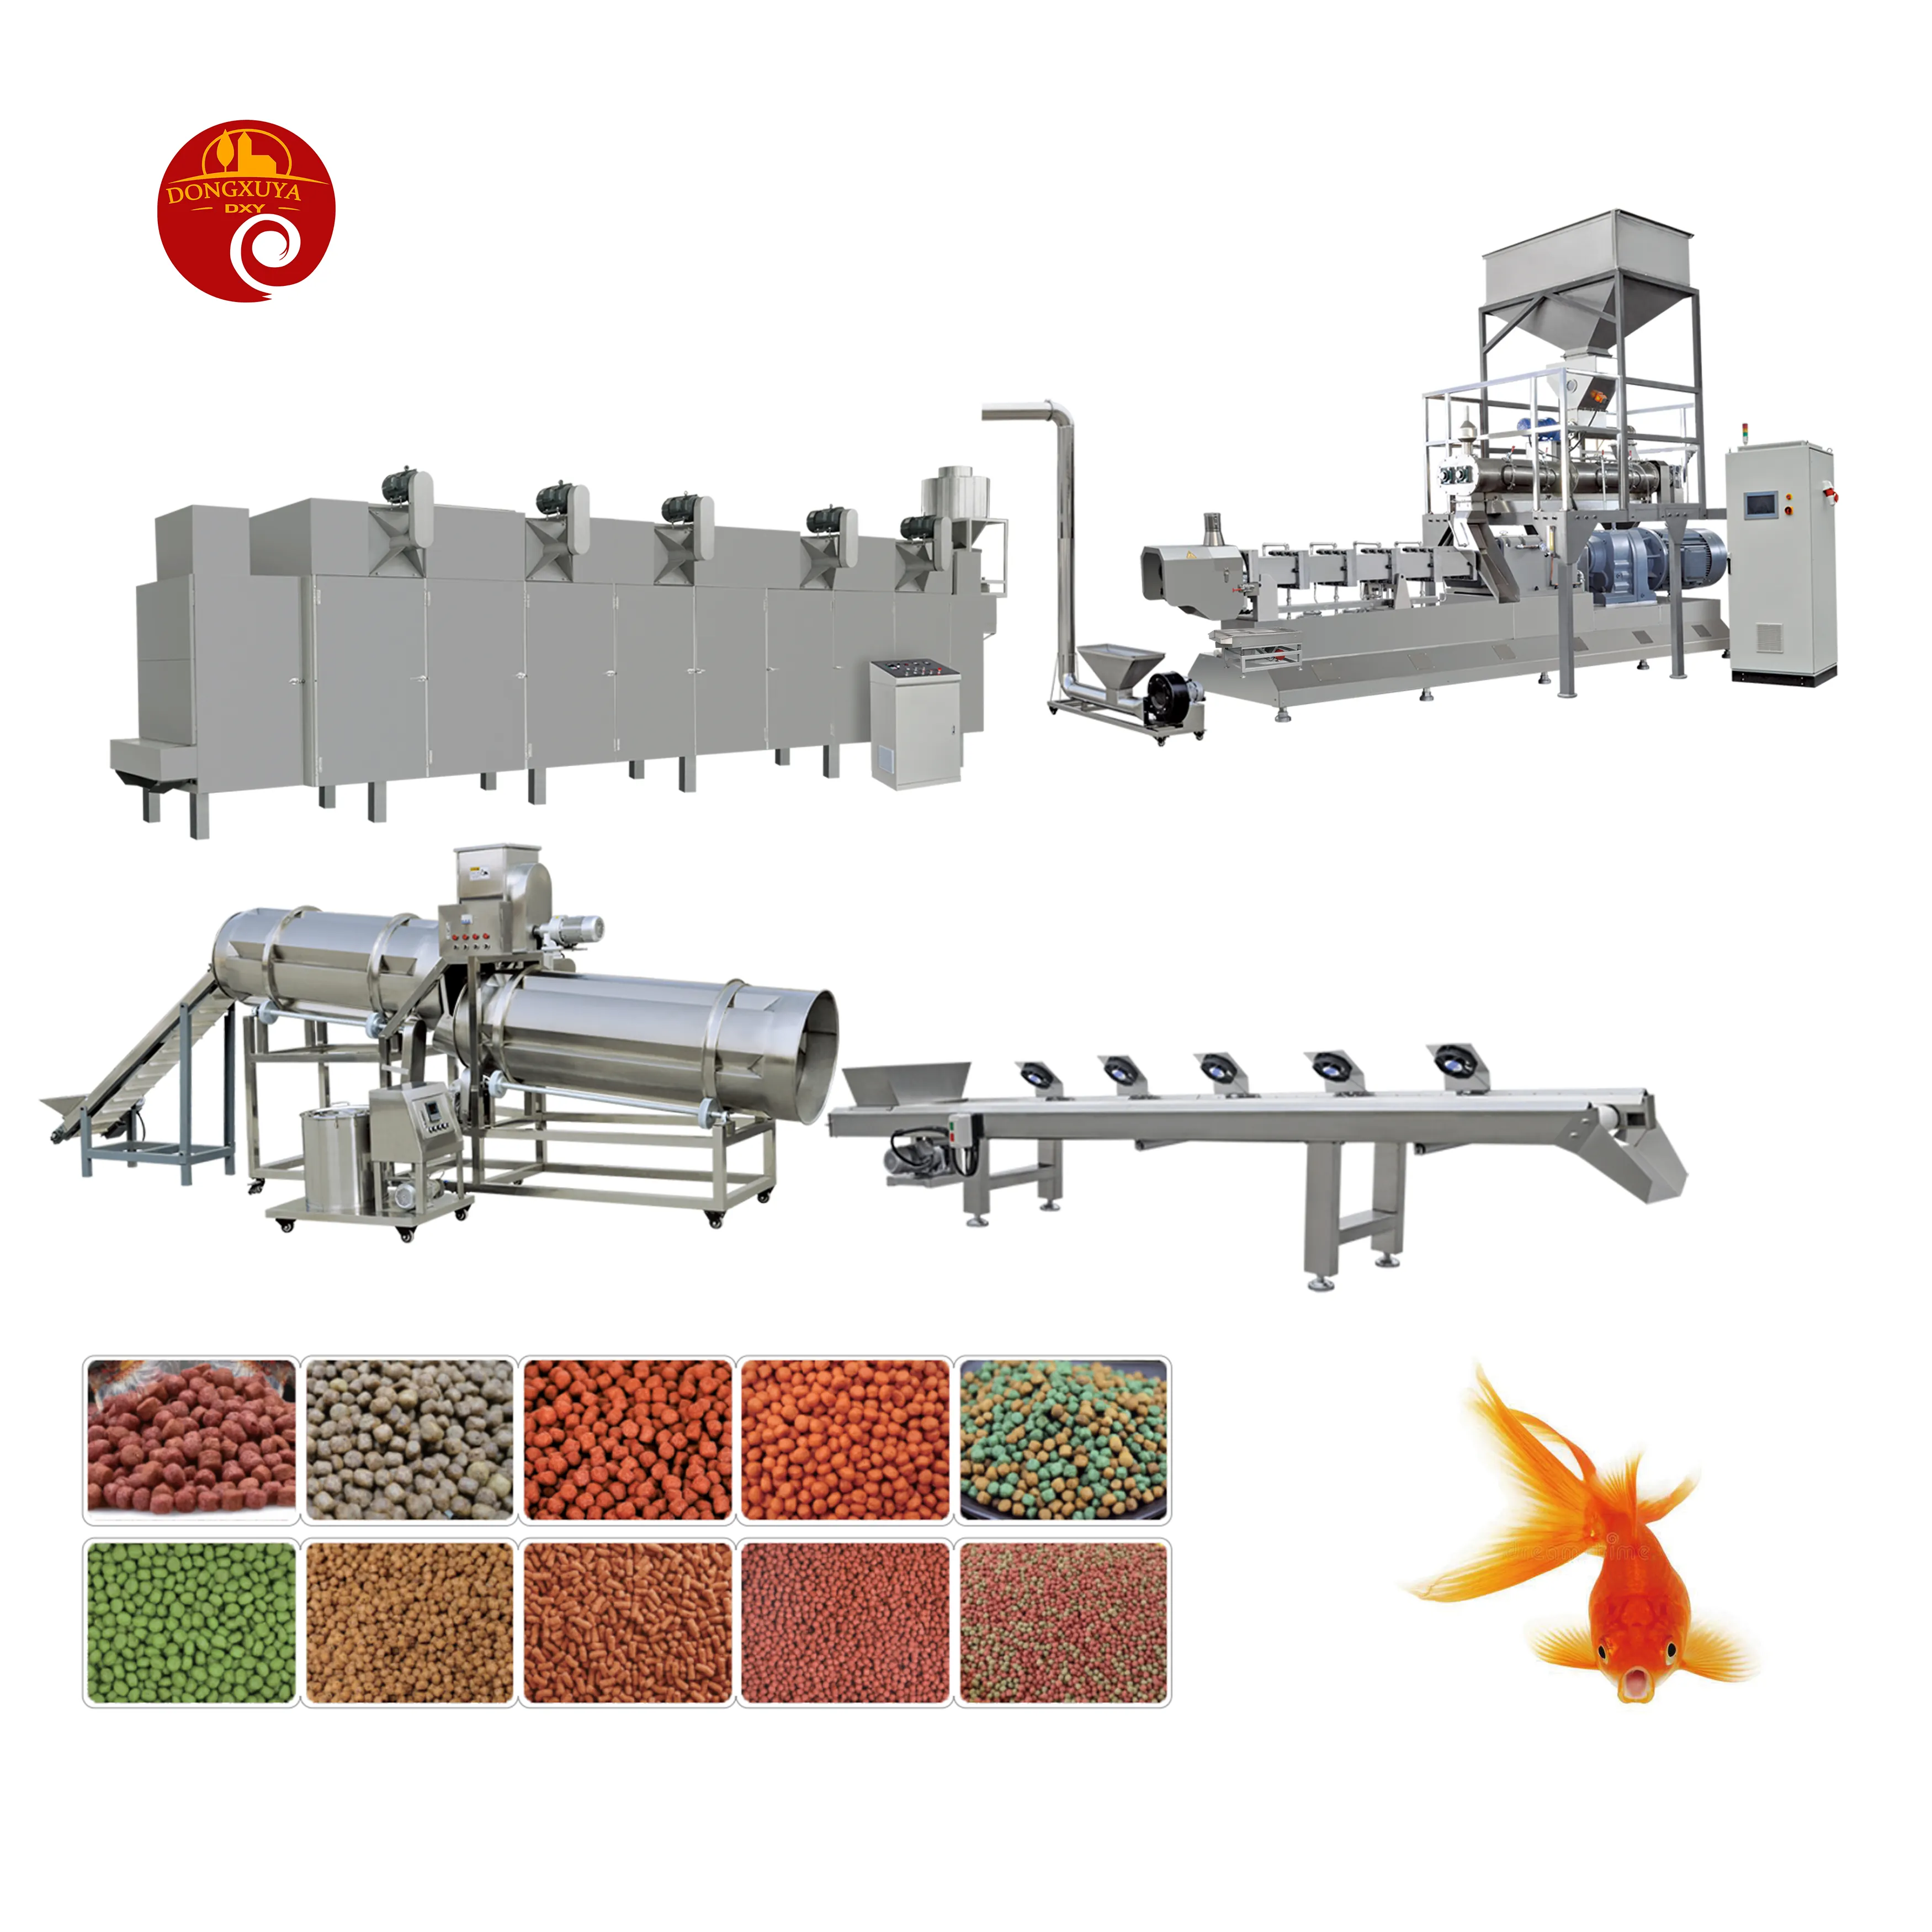 أفضل جودة الصينية تصنيع الصناعية حبيبات طعام الحيوانات الأليفة مطحنة صنع آلة العائمة خط إنتاج أعلاف الأسماك معدات